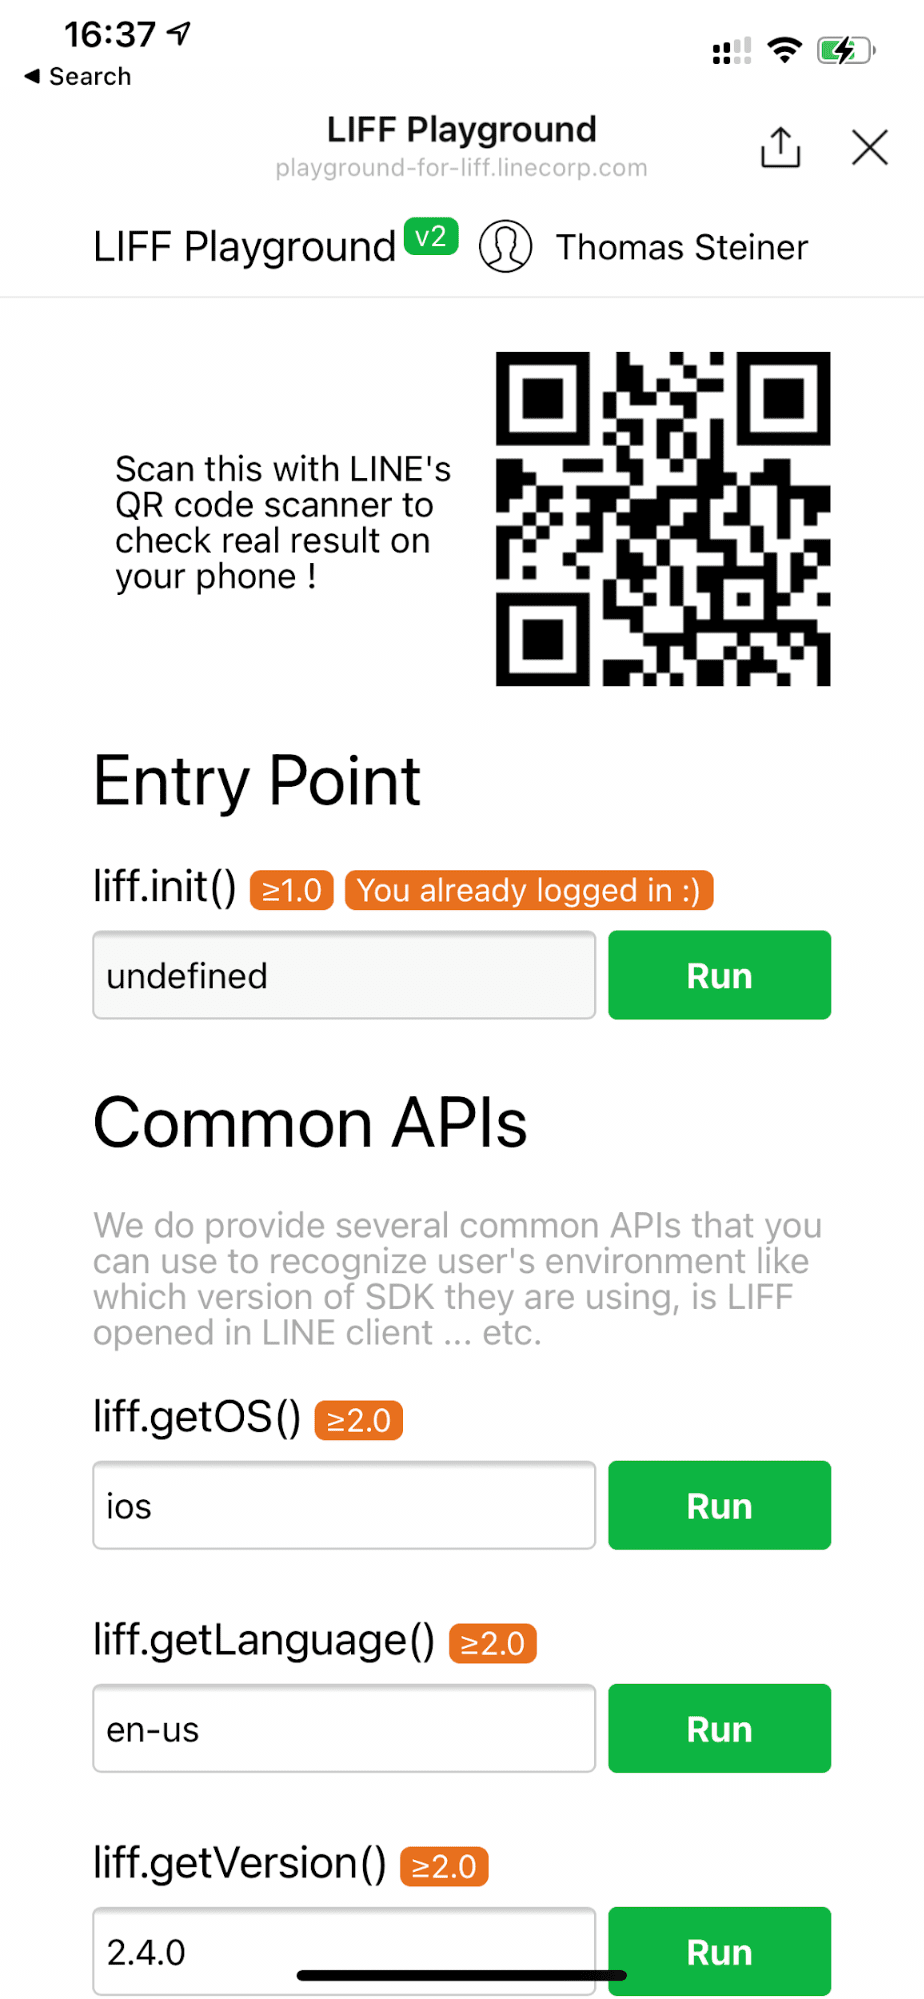 אפליקציית ההדגמה של LINE Playground פועלת במכשיר iOS והפונקציה &#39;liff.getOS() &#39; מחזירה &#39;ios&#39;.